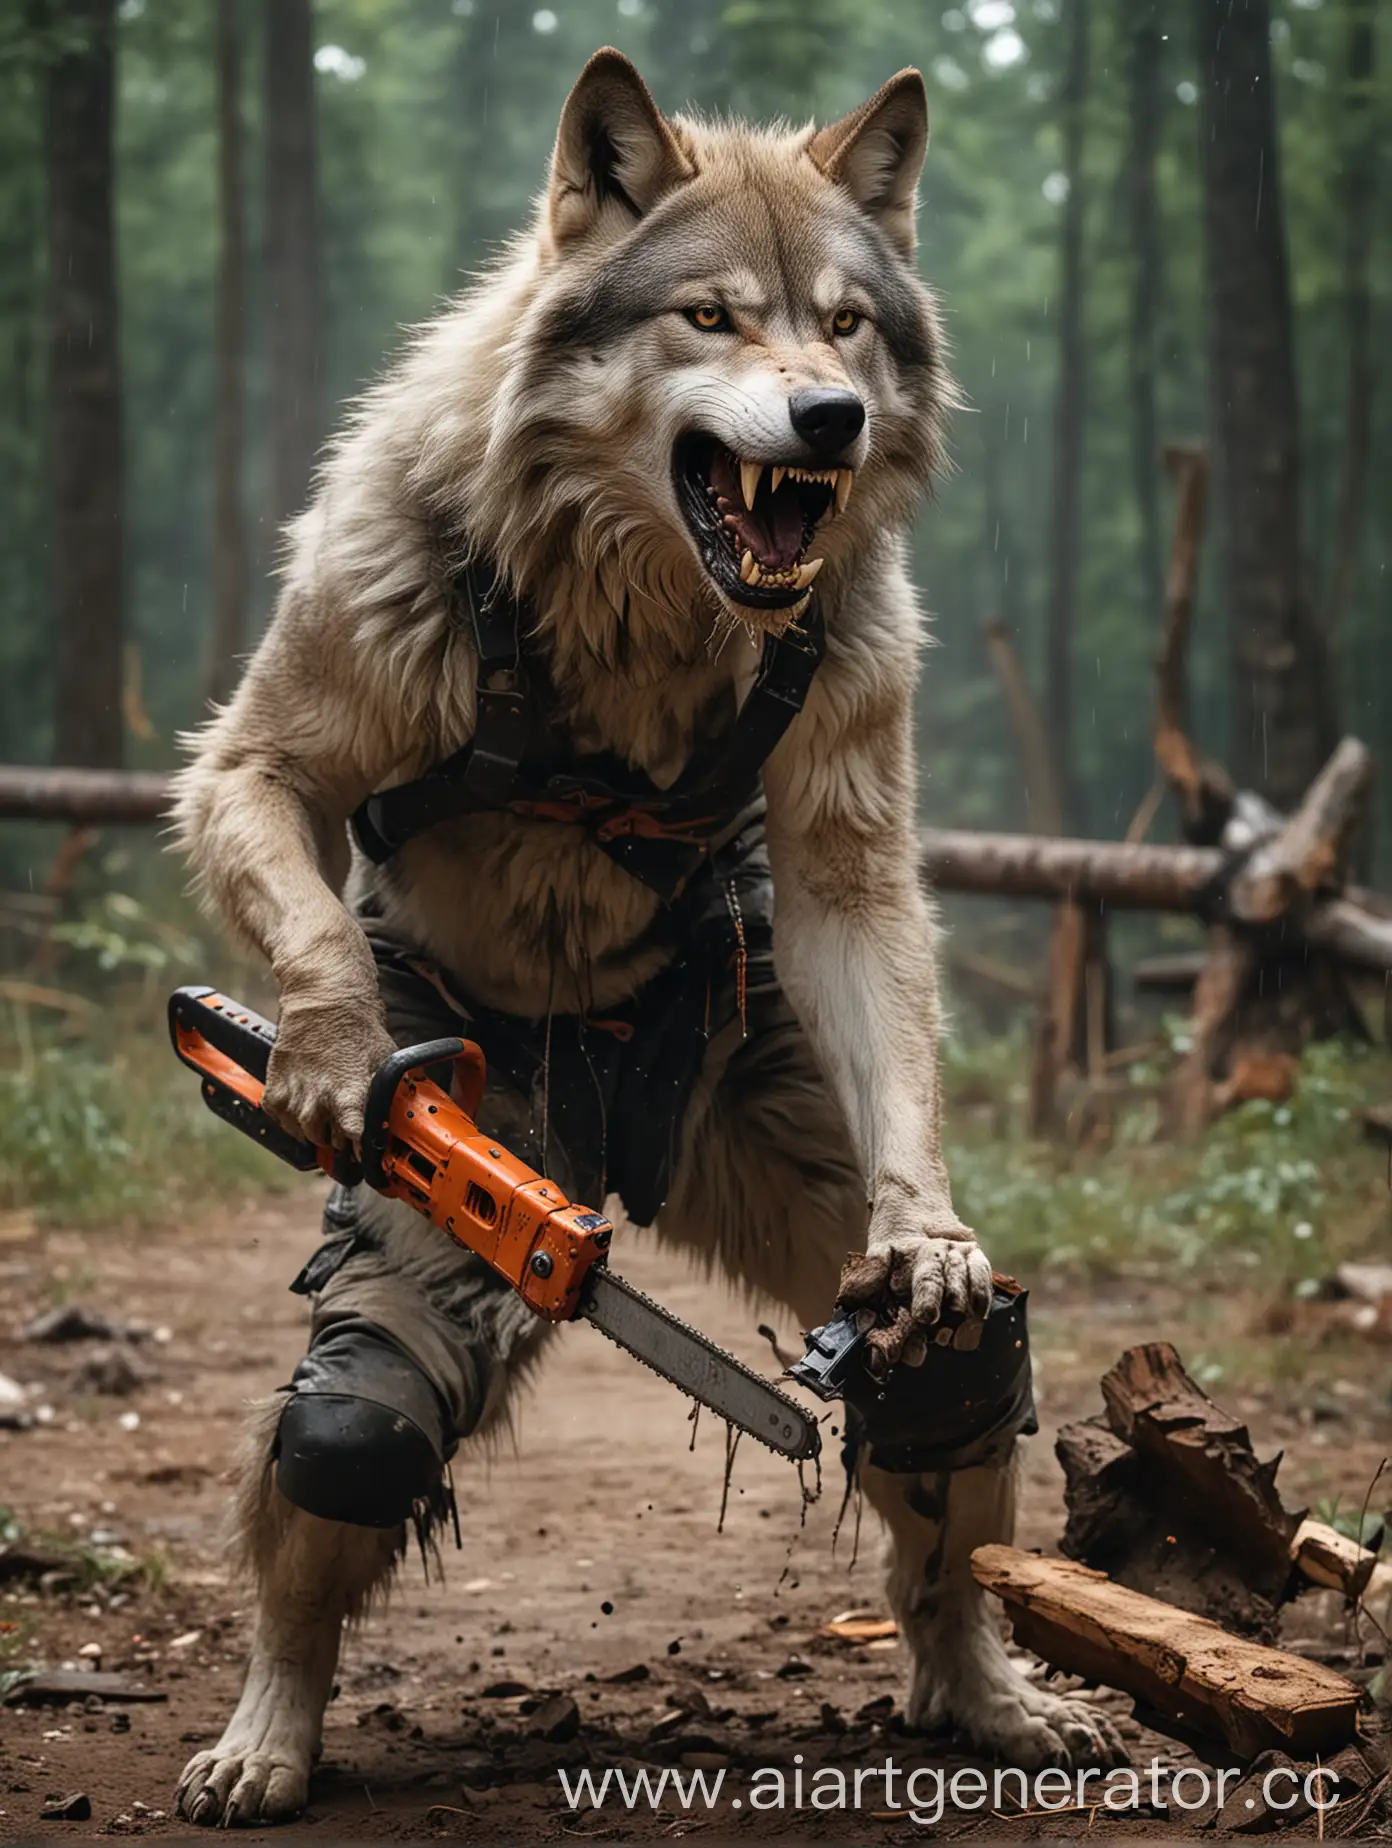 Волк с бензопилой в зубах сражается с мастером кунг-фу